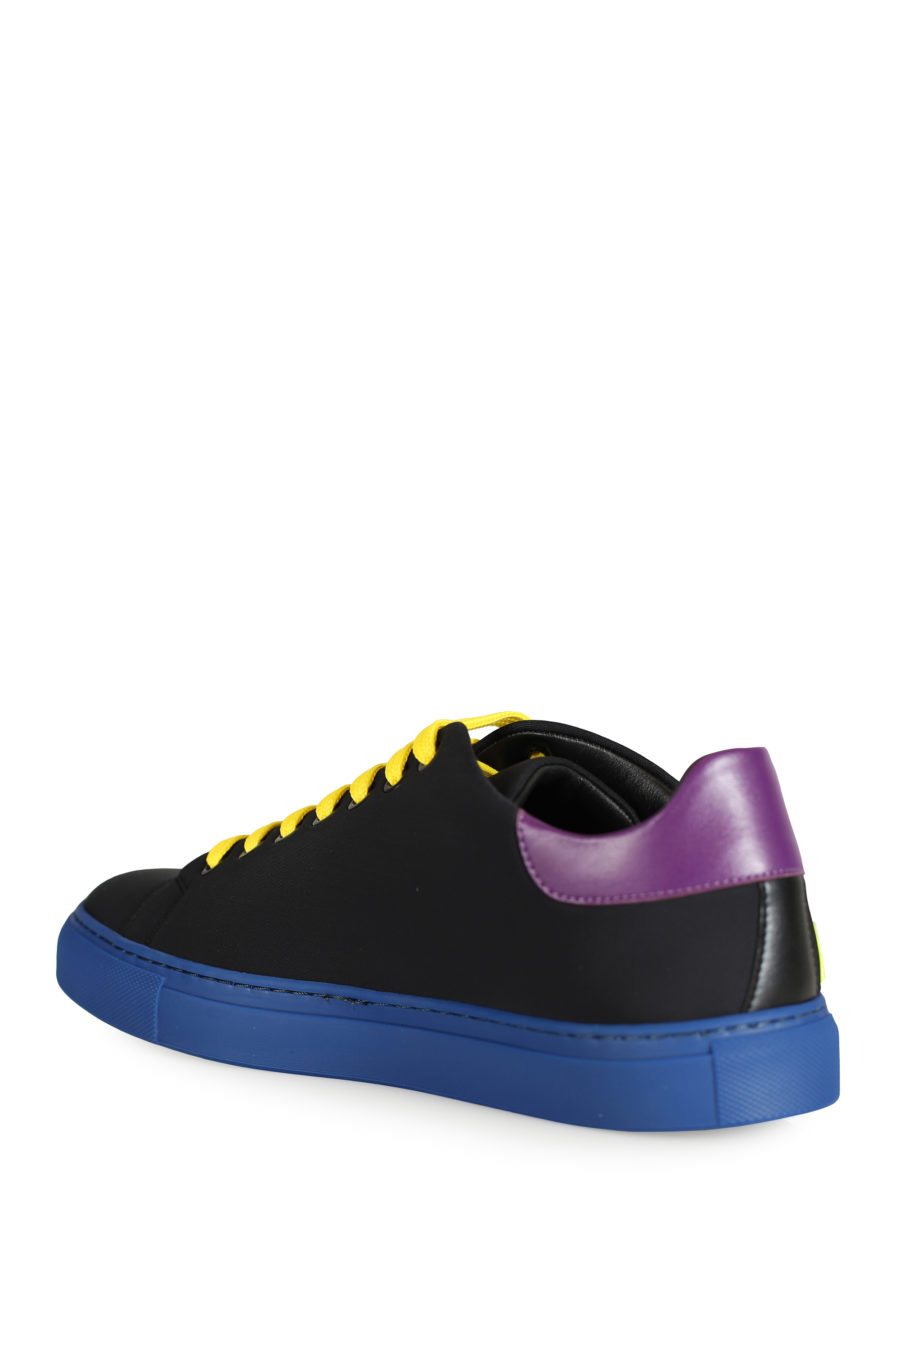 Zapatillas negras con detalles de colores - IMG 3319